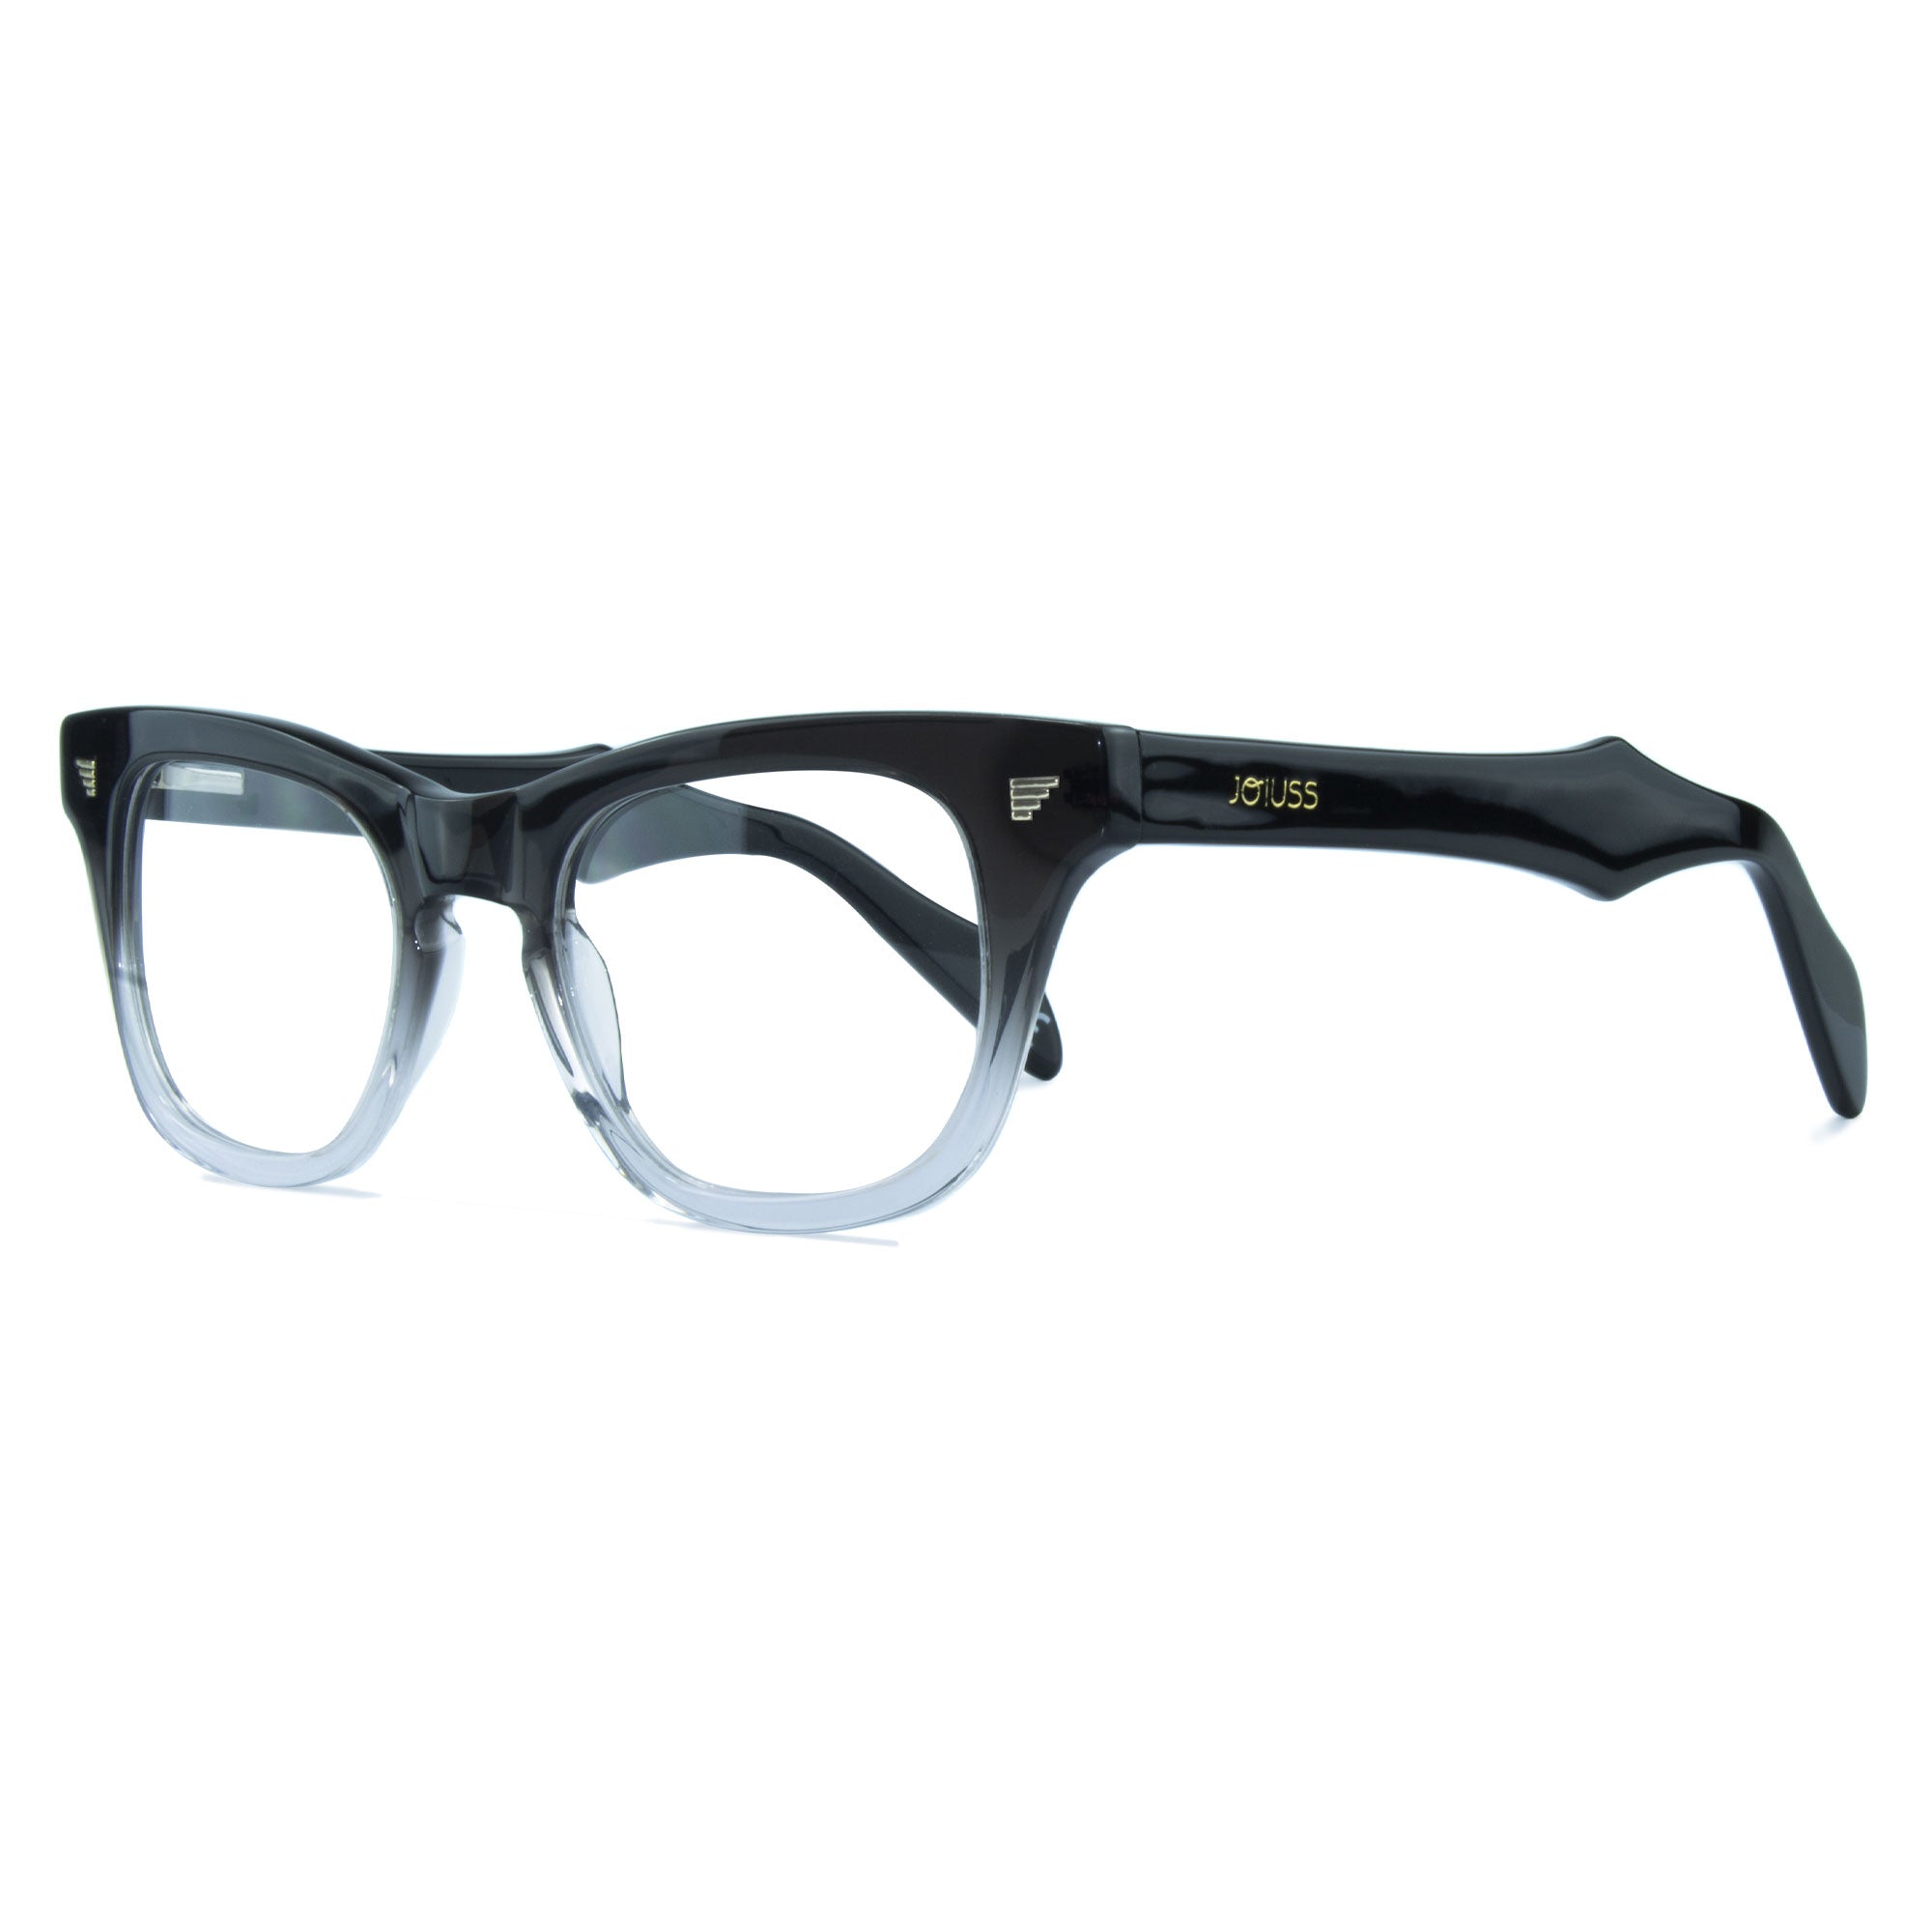 Rectangular Glasses Frame - Black & Clear - Russ